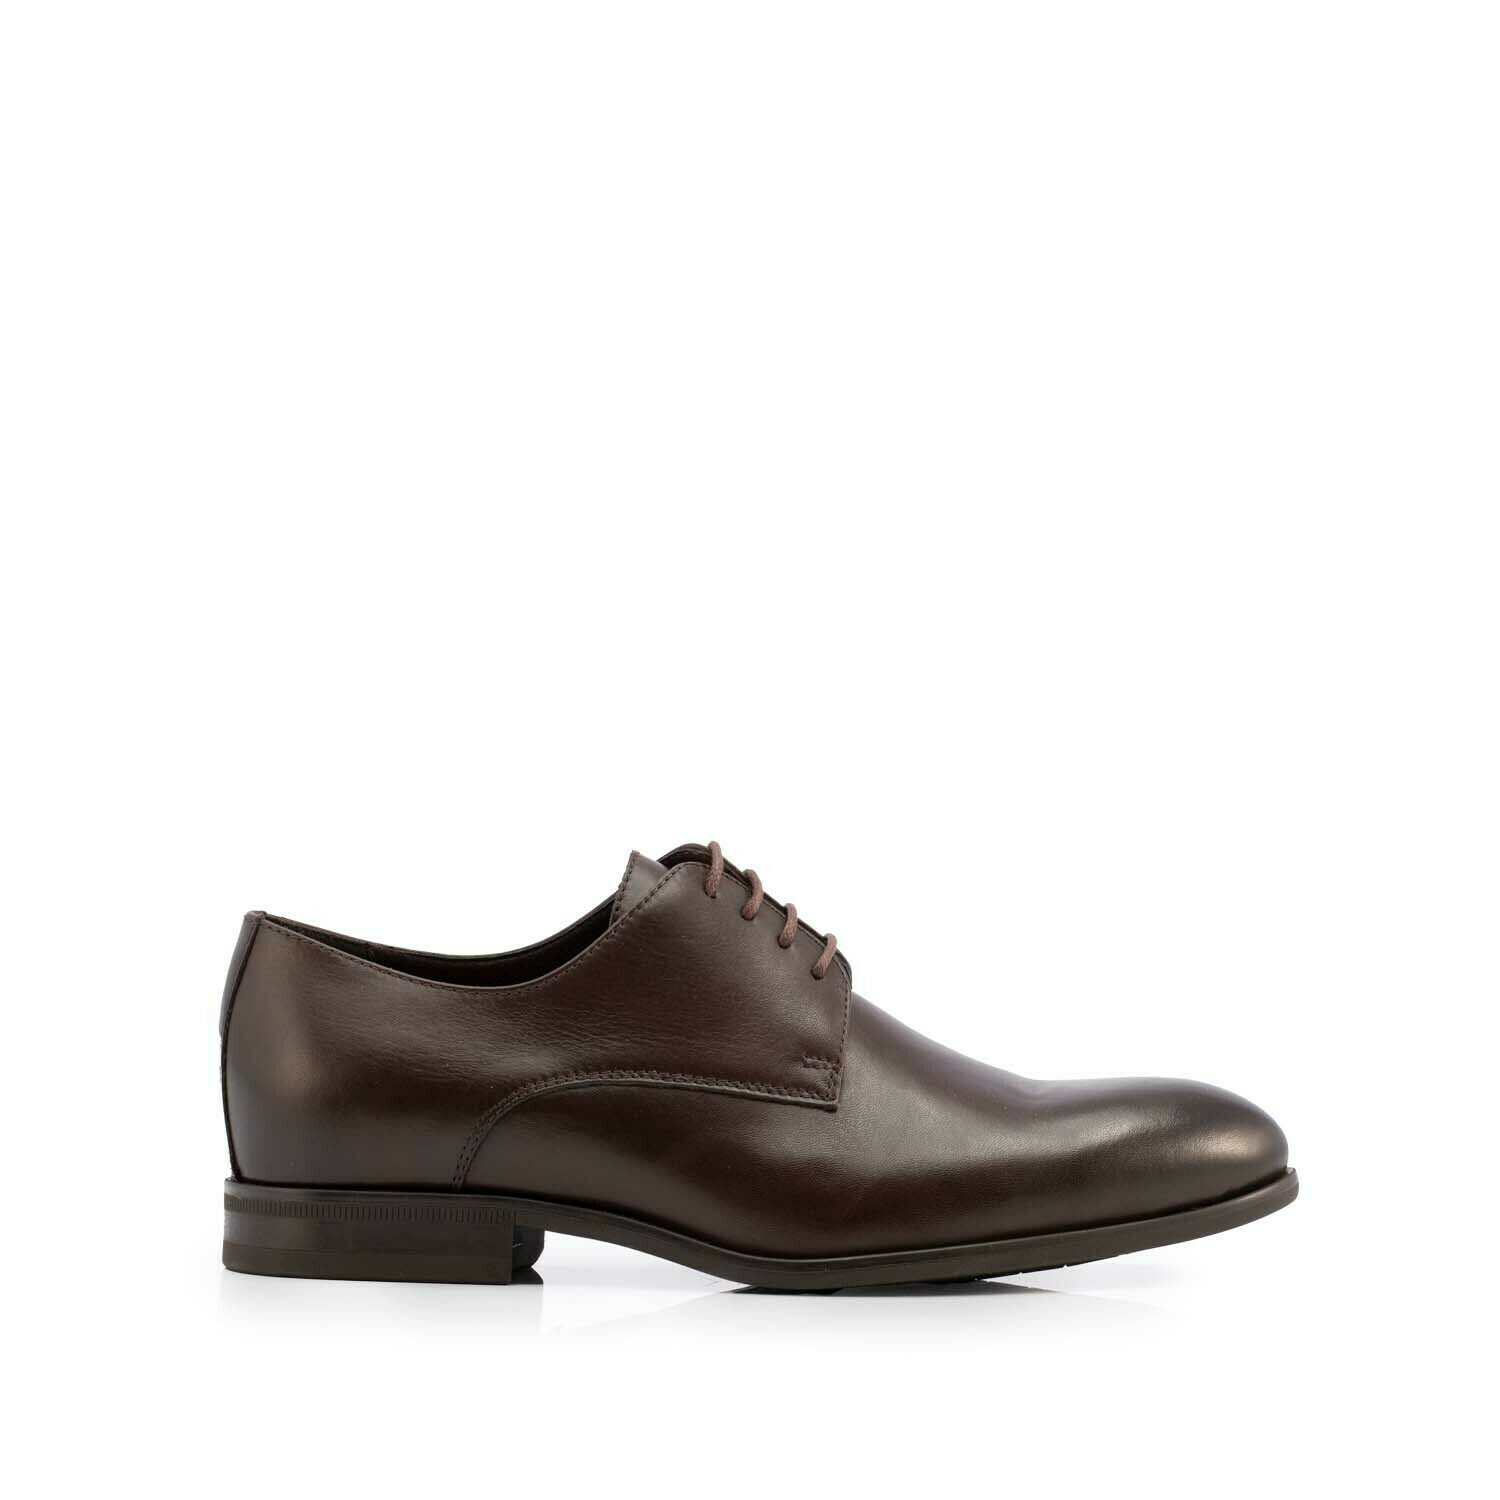 Pantofi bărbați eleganți din piele naturală, Leofex - 898 Maro Box